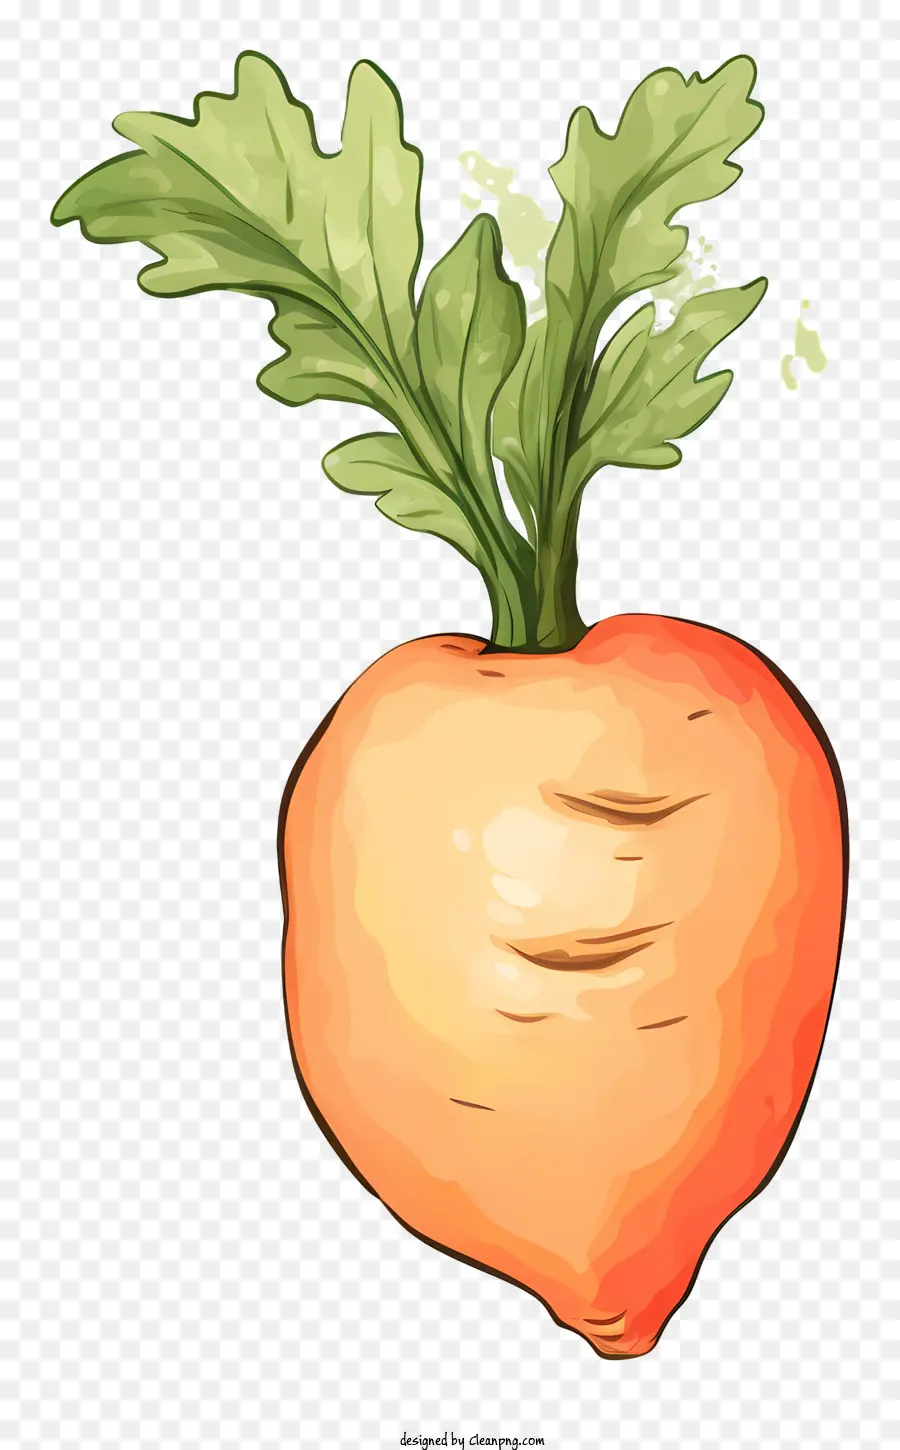 Dinh dưỡng cà rốt mang lại lợi ích cho vitamin A Thực phẩm giàu chất xơ lựa chọn thực phẩm lành mạnh - Cà rốt: Rễ rau, thân trắng, rễ cam, thức ăn ngon, ngon